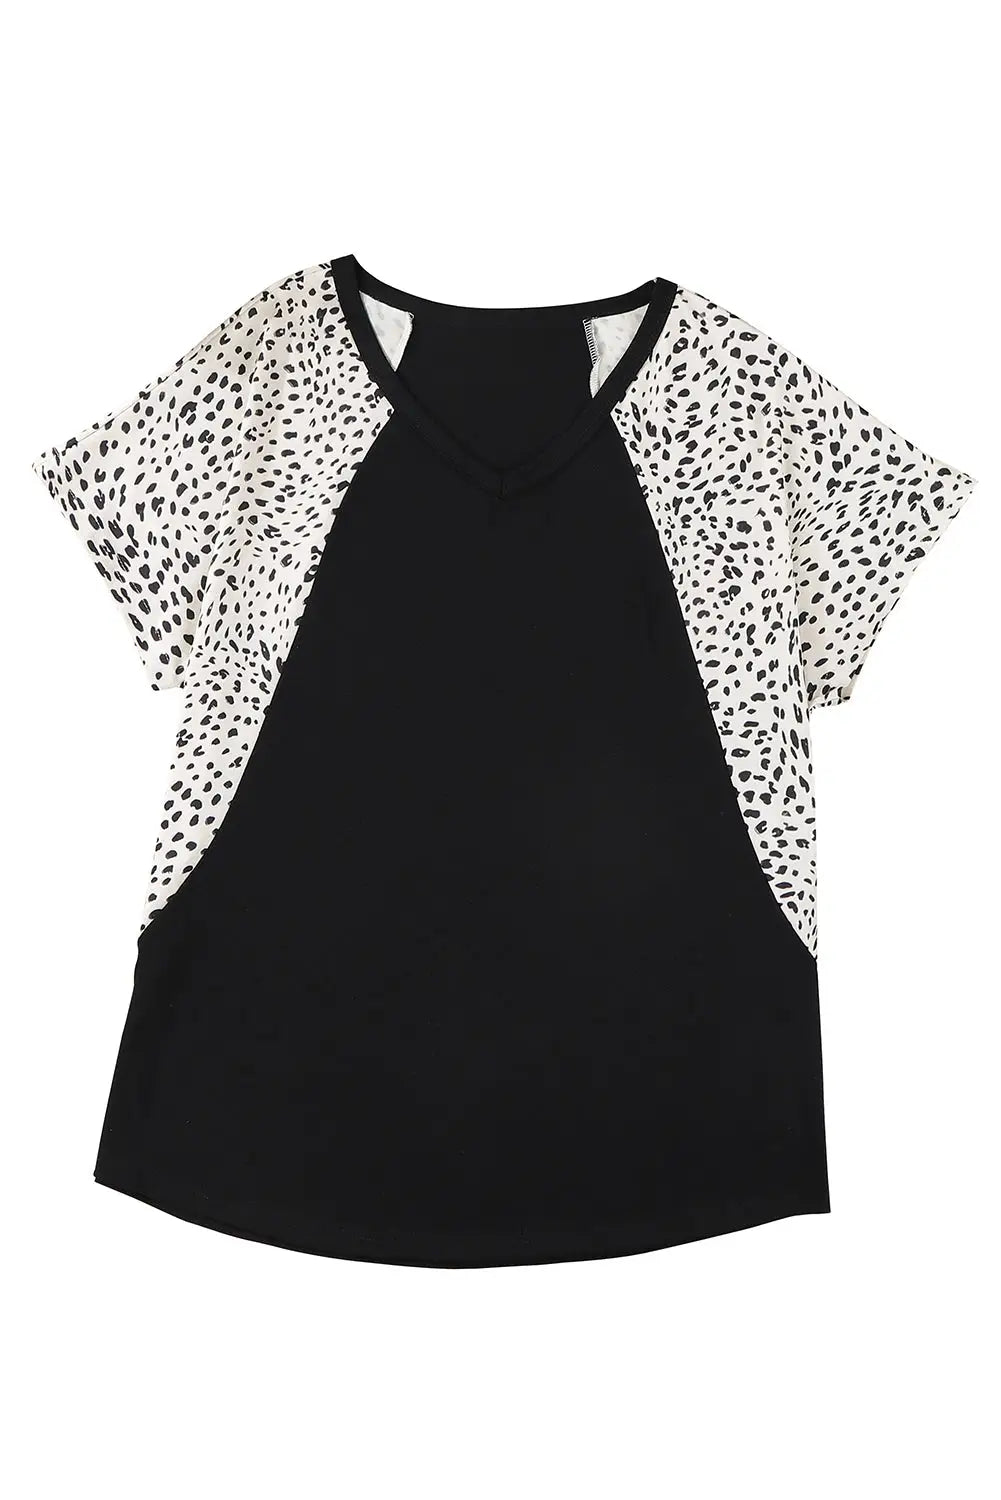 Black leopard sleeves color block v neck t-shirt - tops